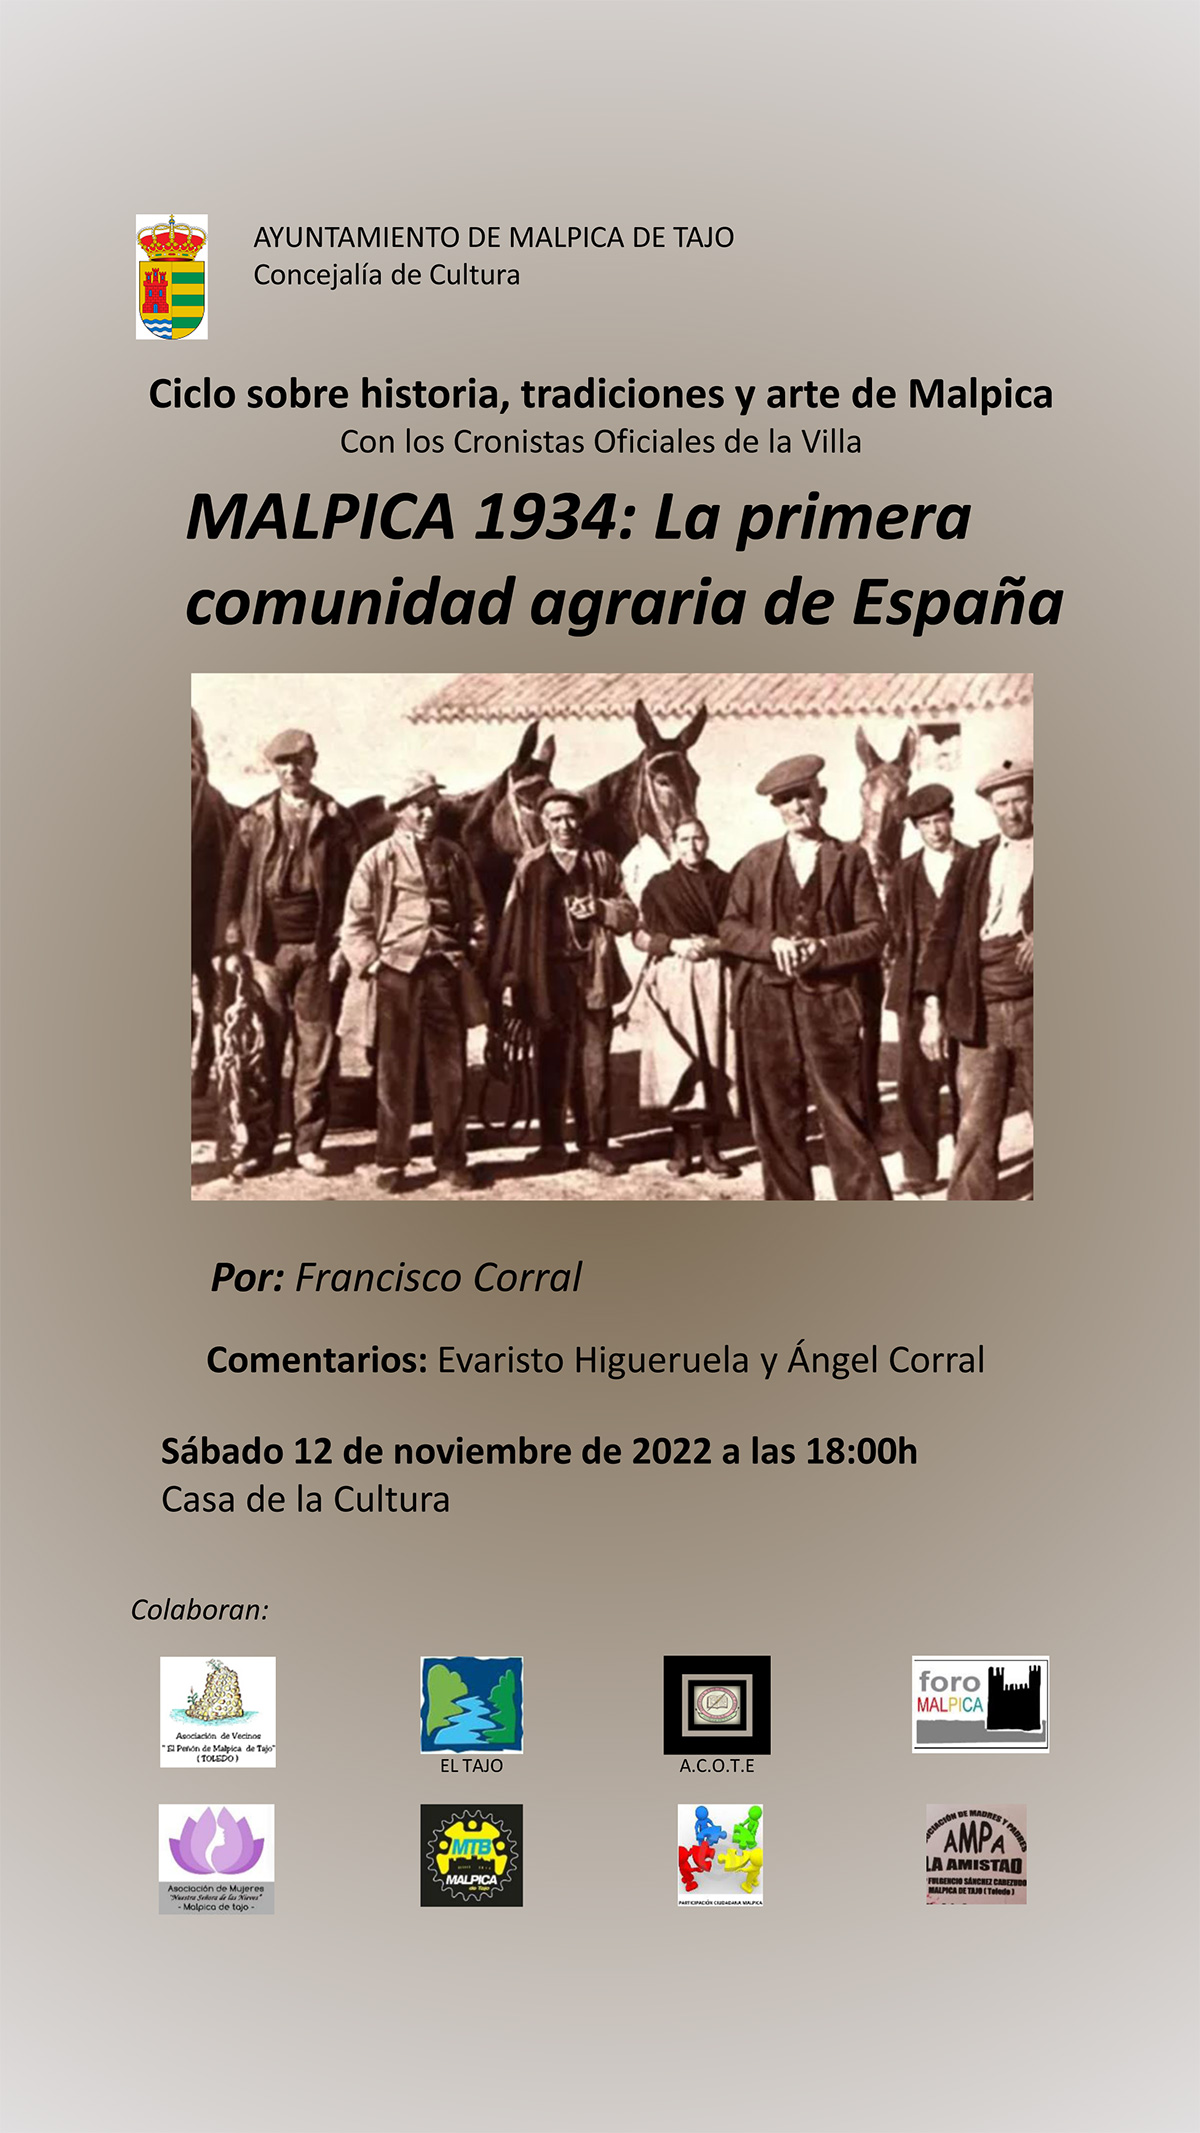 Cartel anunciador de la charla-coloquio de Francisco Corral